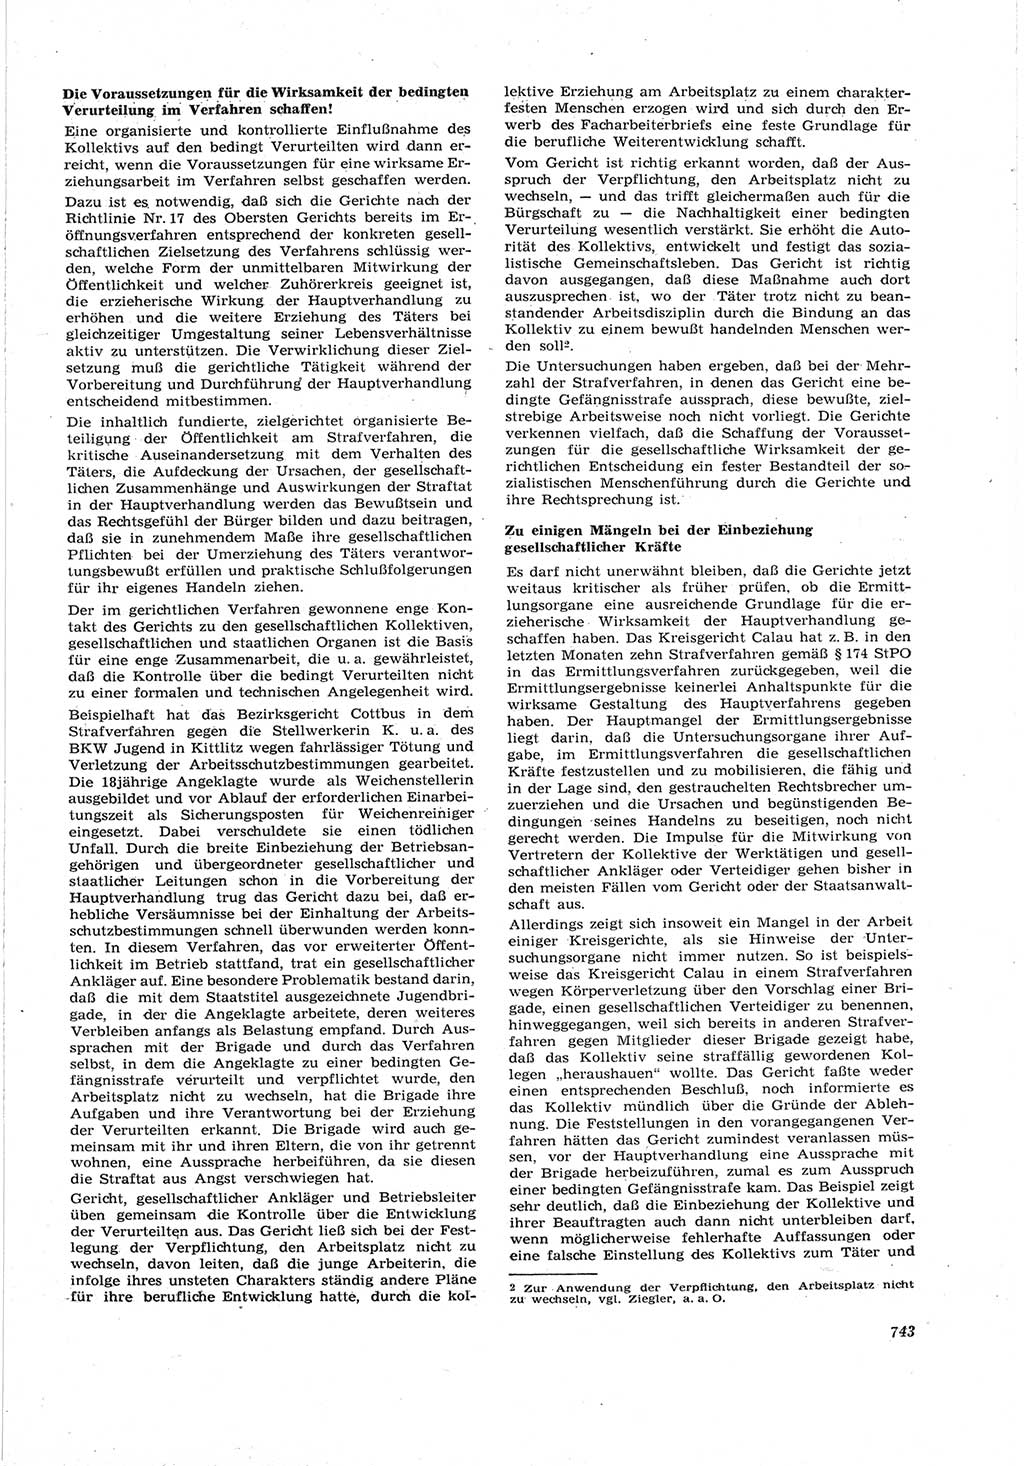 Neue Justiz (NJ), Zeitschrift für Recht und Rechtswissenschaft [Deutsche Demokratische Republik (DDR)], 17. Jahrgang 1963, Seite 743 (NJ DDR 1963, S. 743)